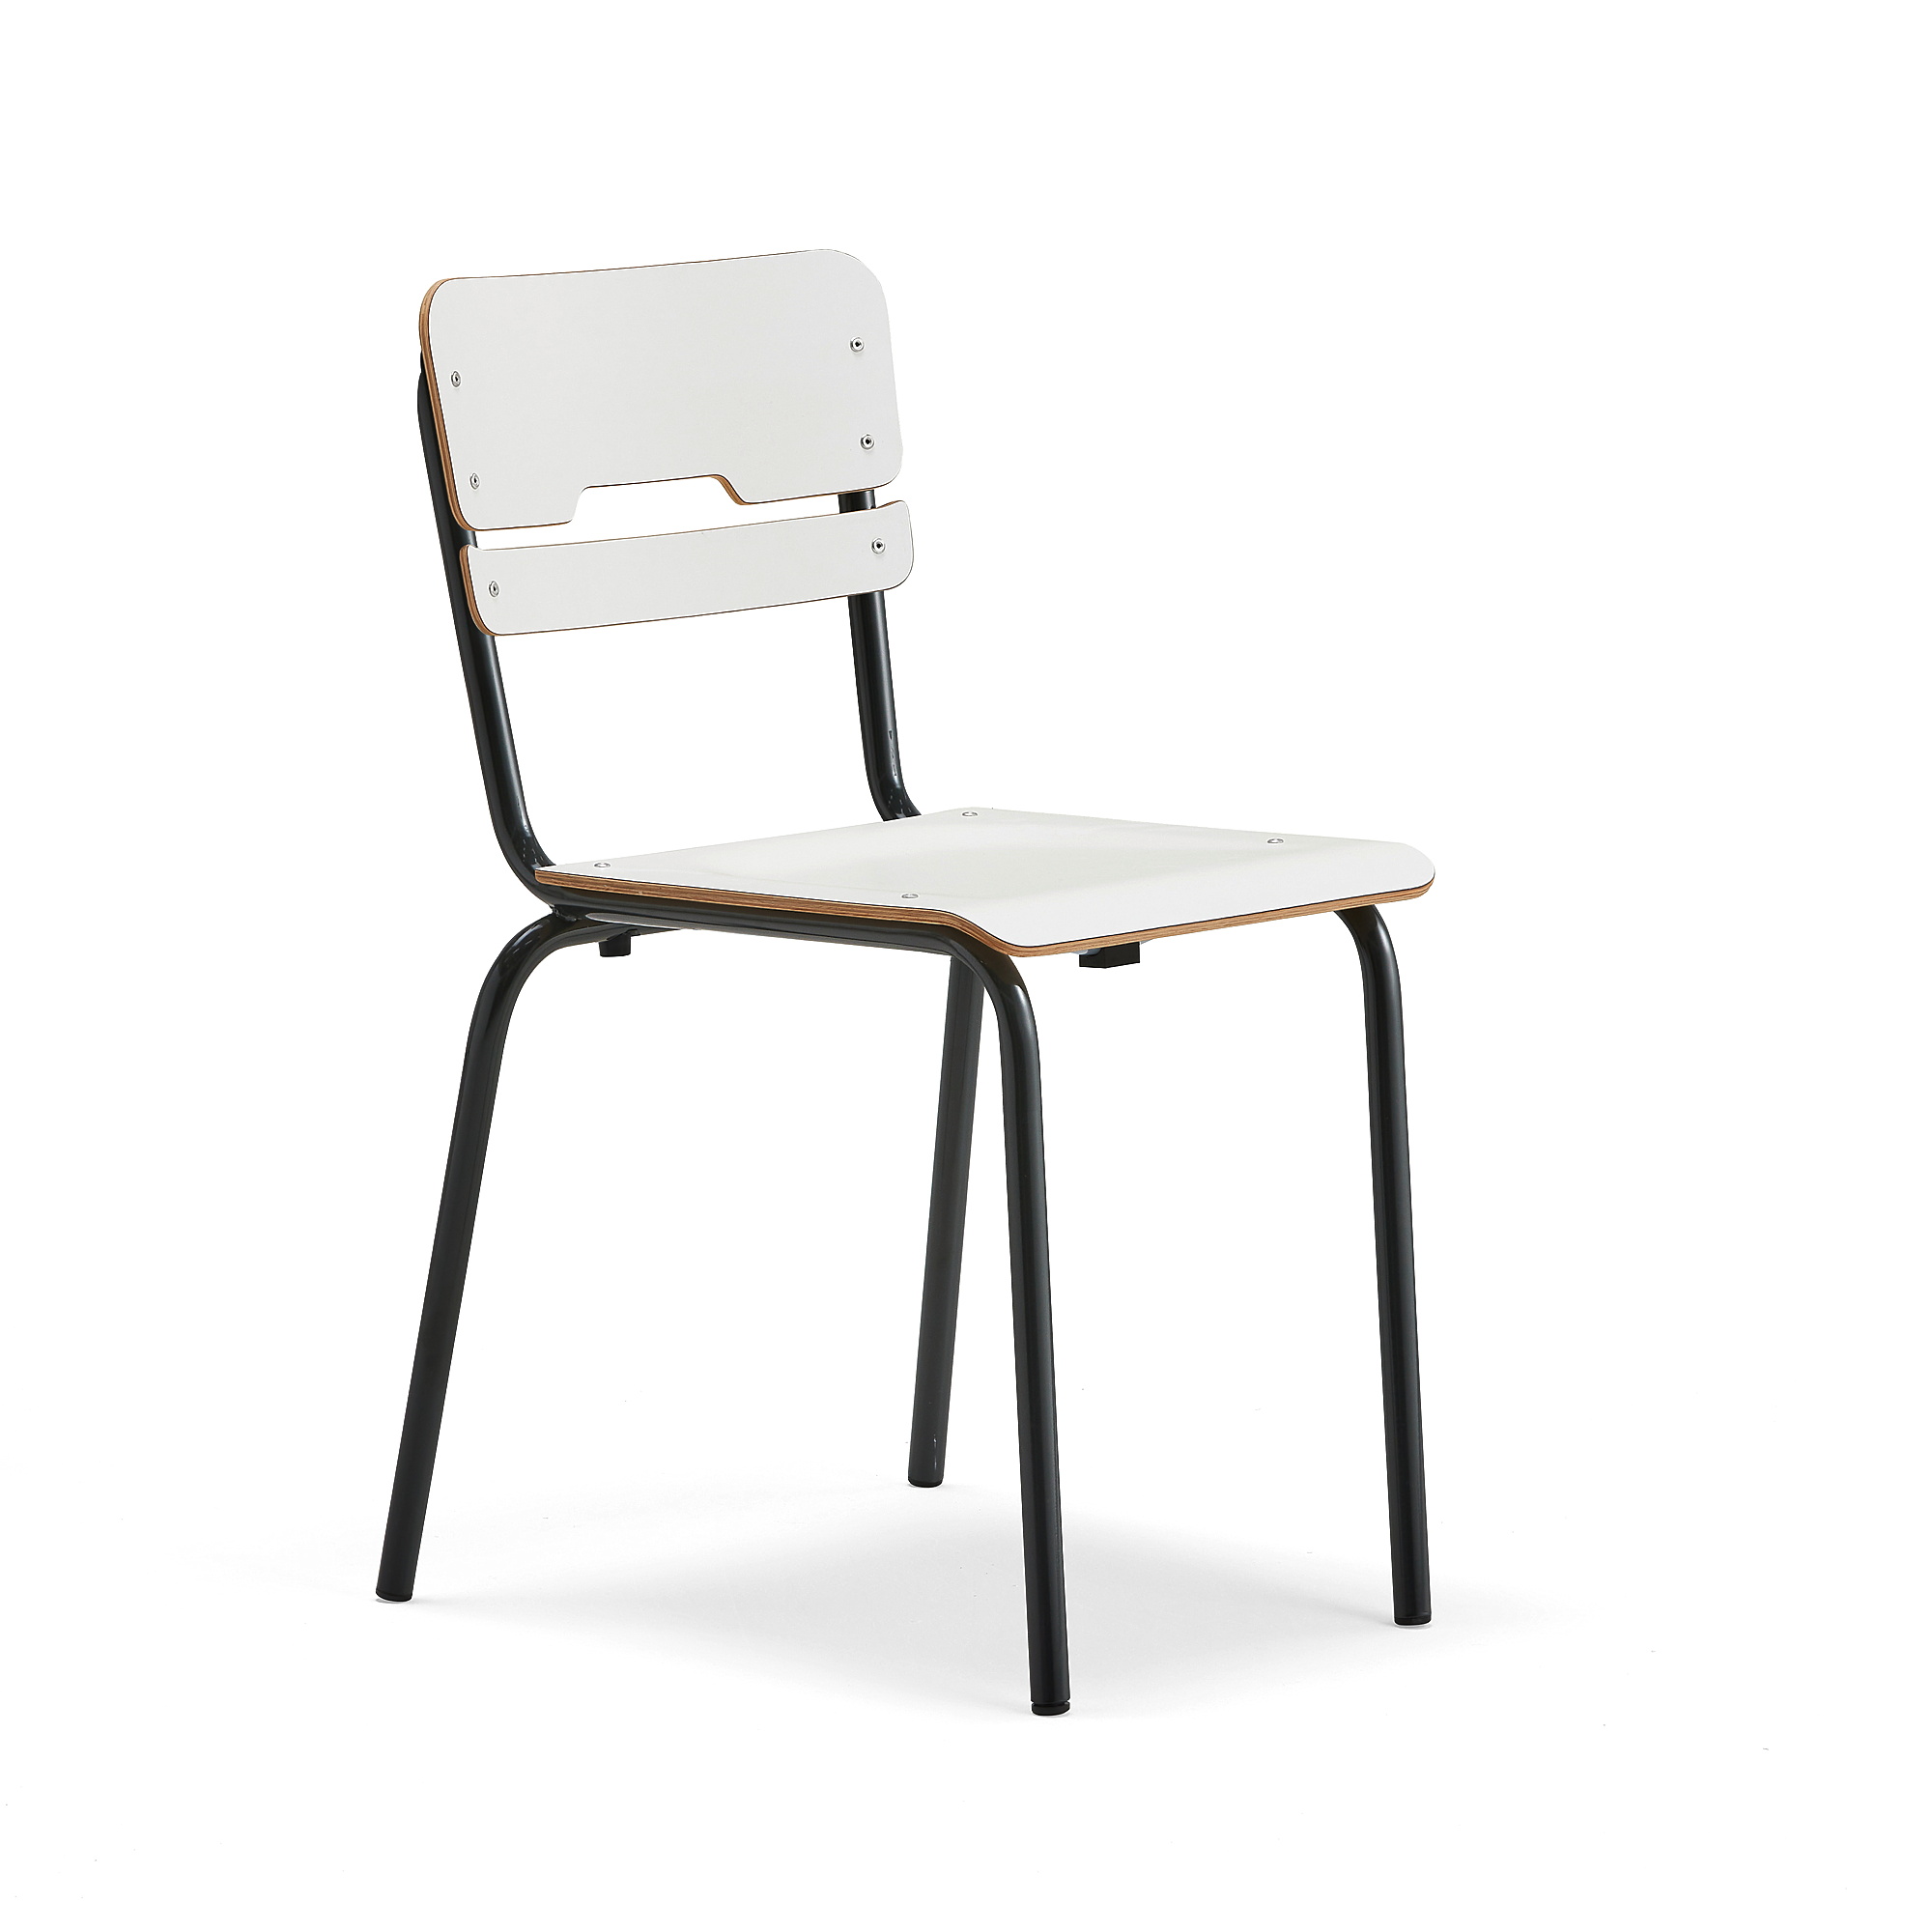 Levně Školní židle SCIENTIA, sedák 390x390 mm, výška 460 mm, antracitová/bílá